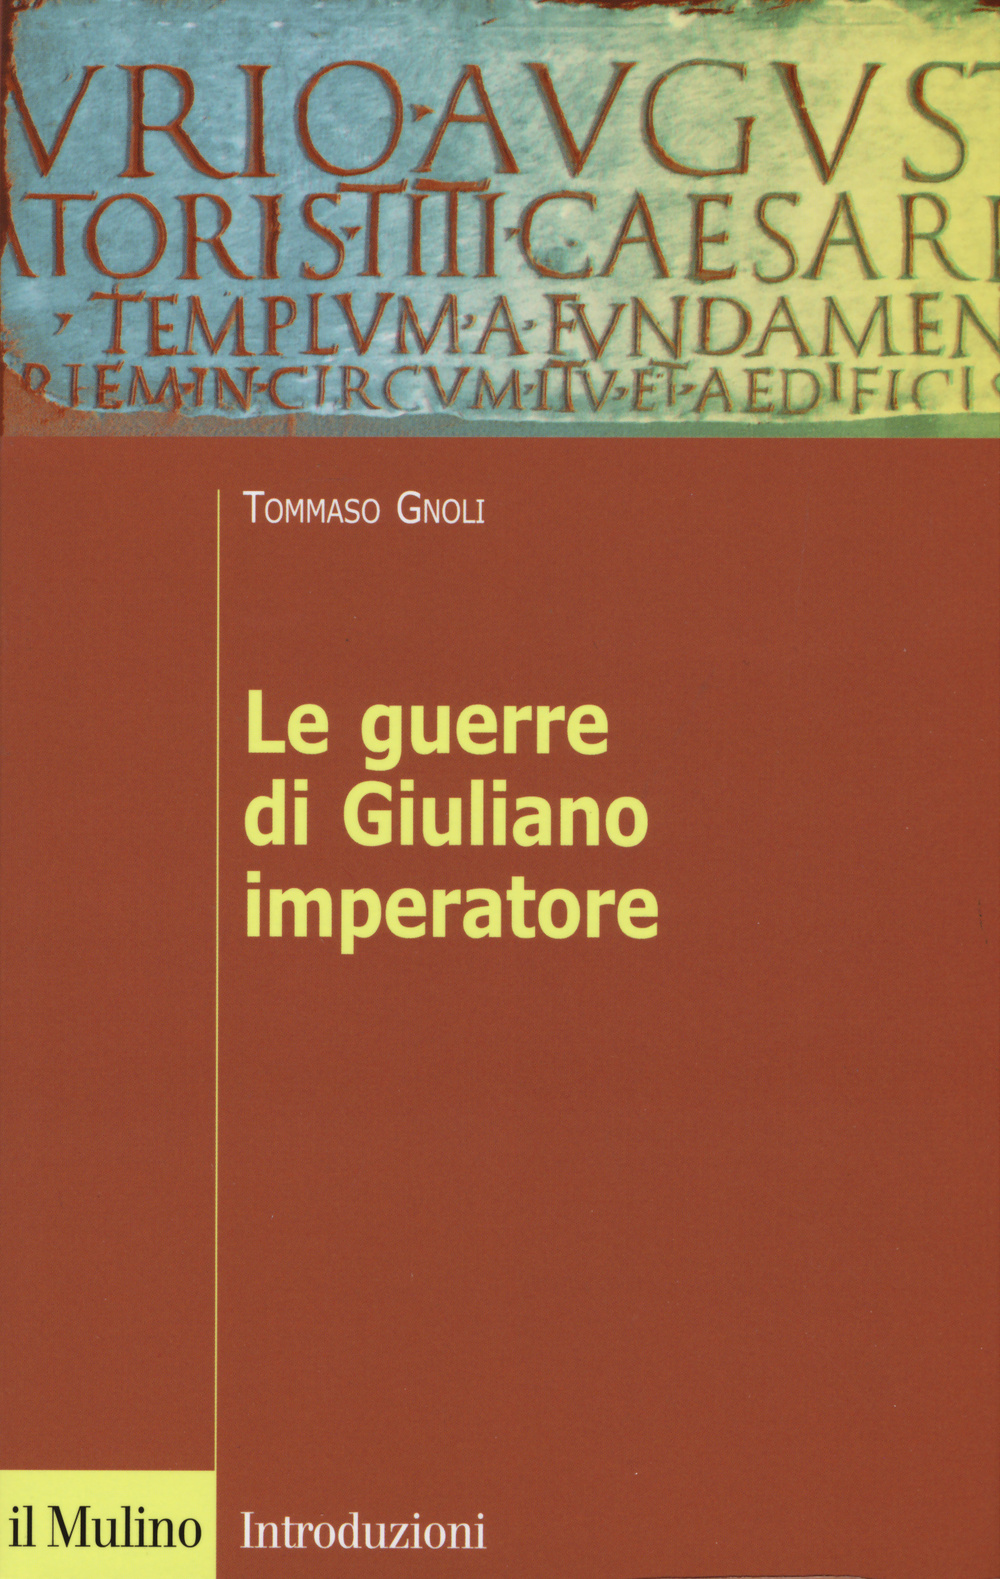 Image of Le guerre di Giuliano imperatore